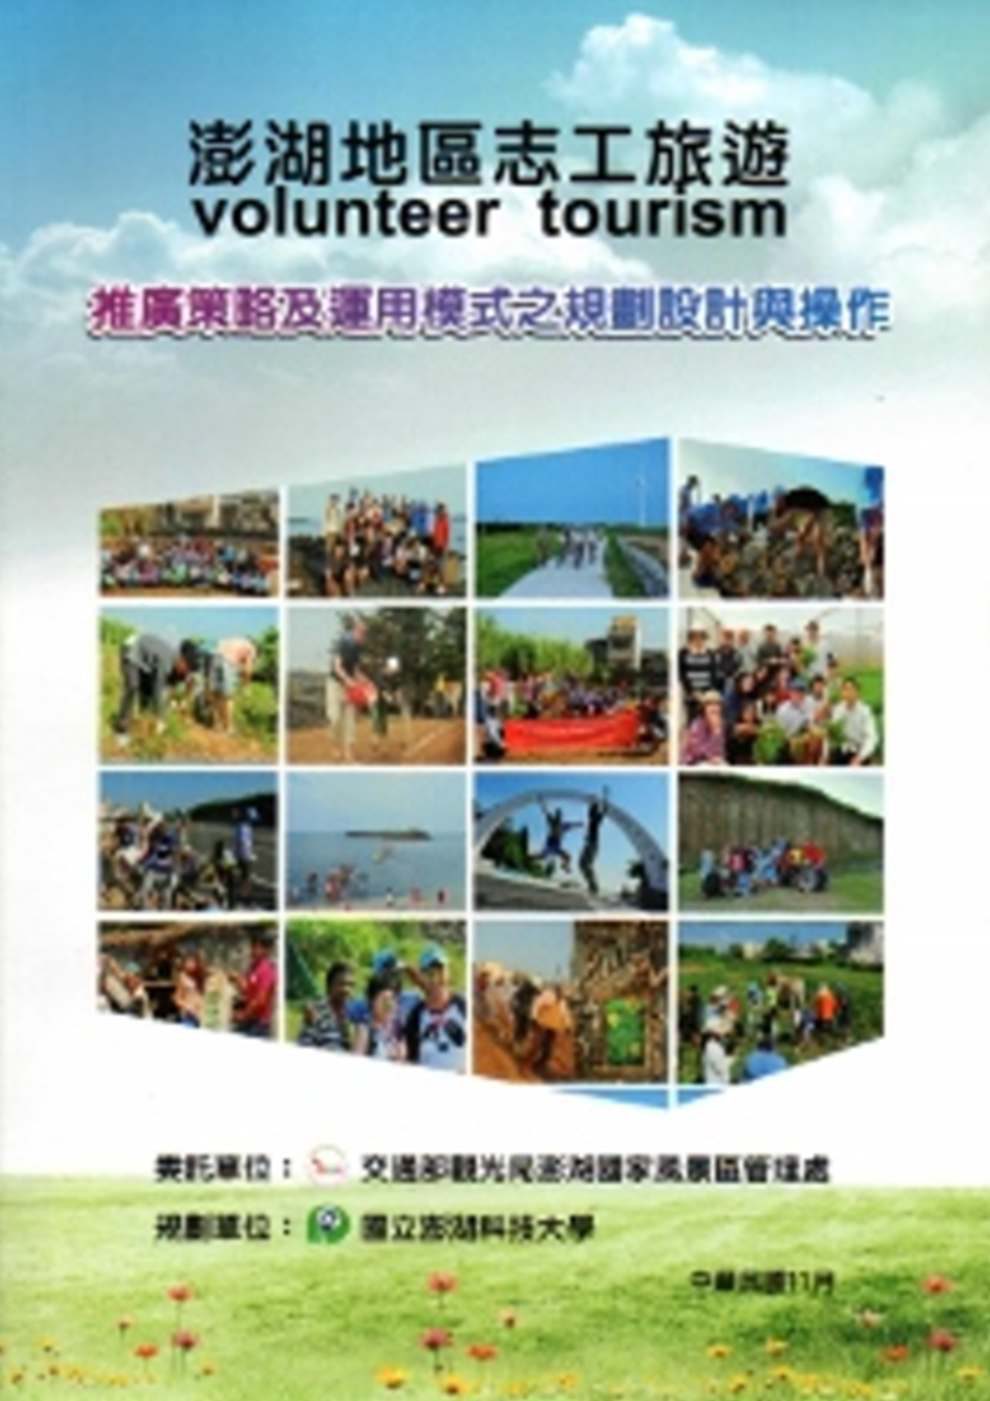 澎湖地區志工旅遊(volunteer